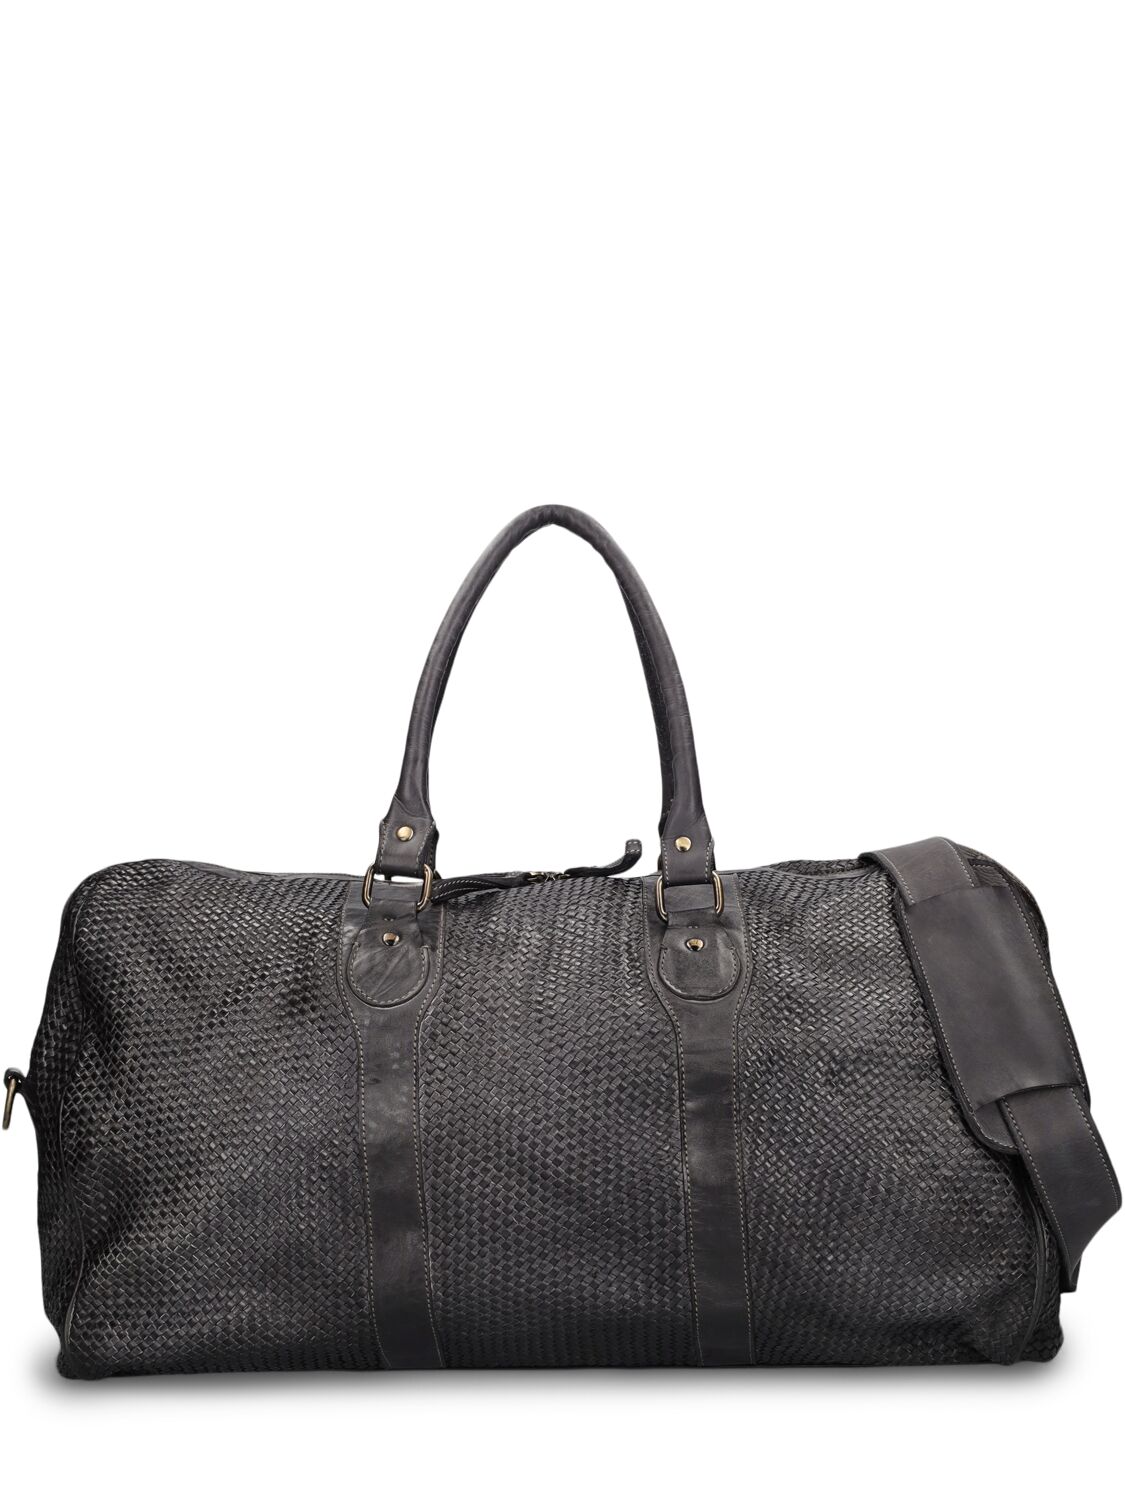 Giorgio Brato Woven Leather Duffle Bag In Black